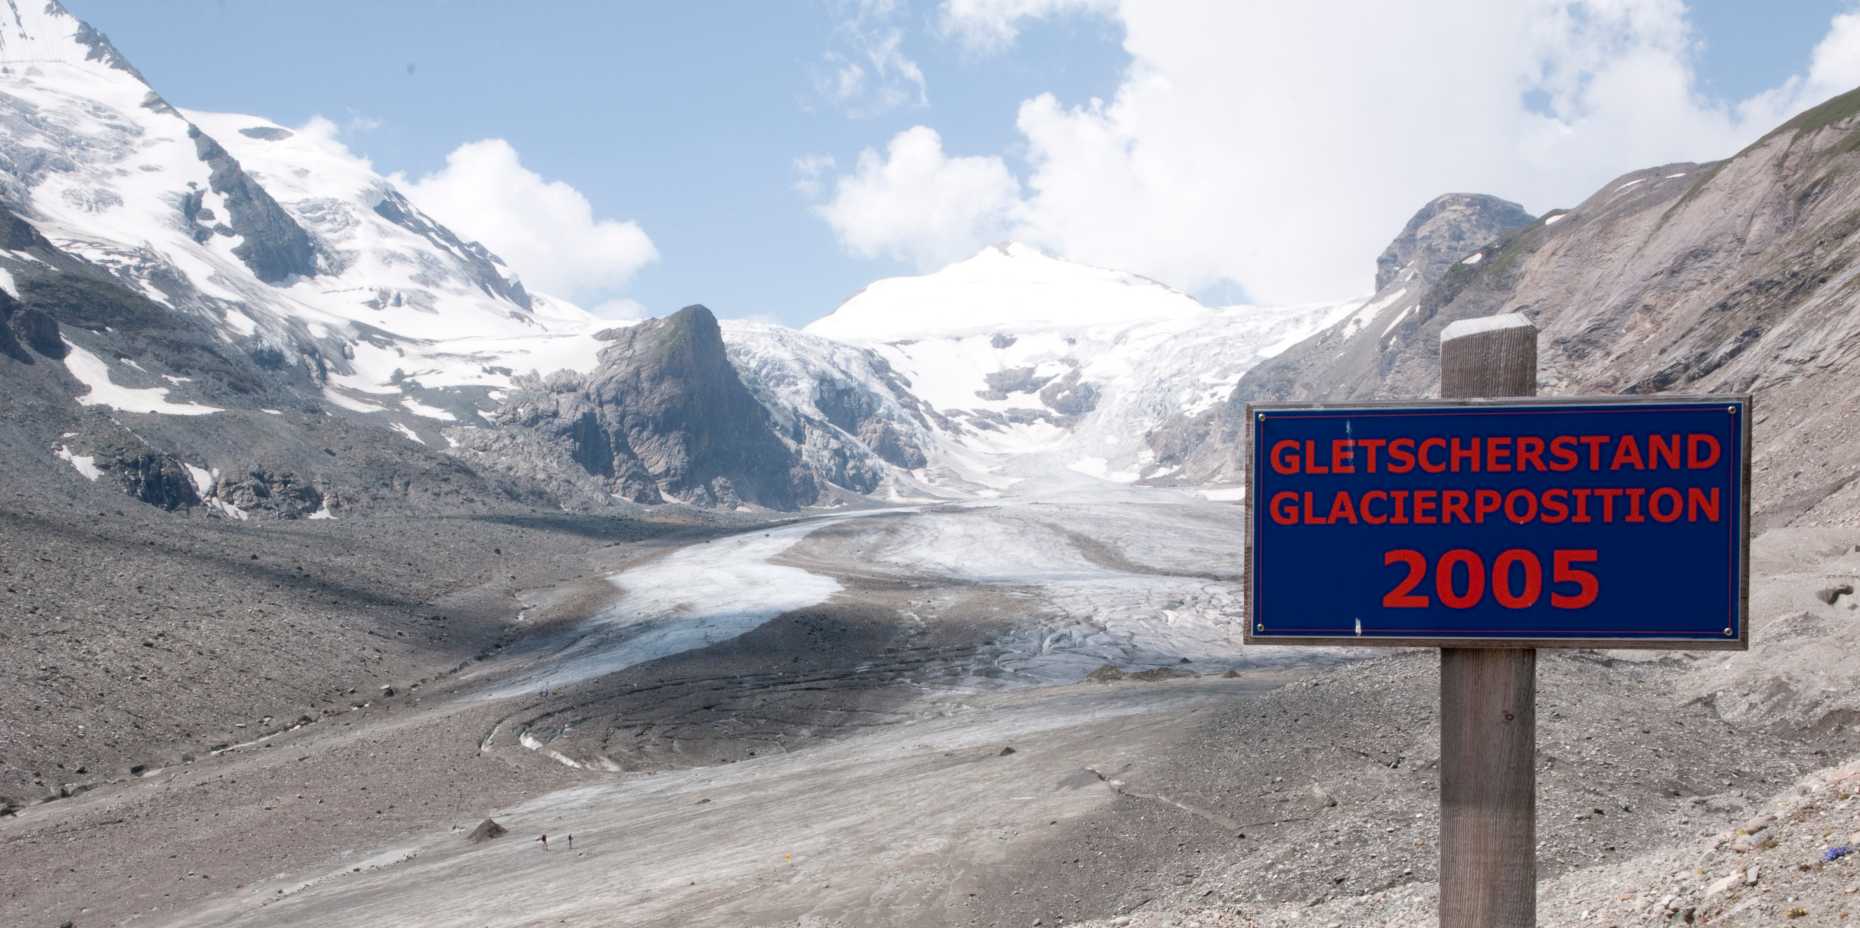 Enlarged view: Bild Gletscherstand